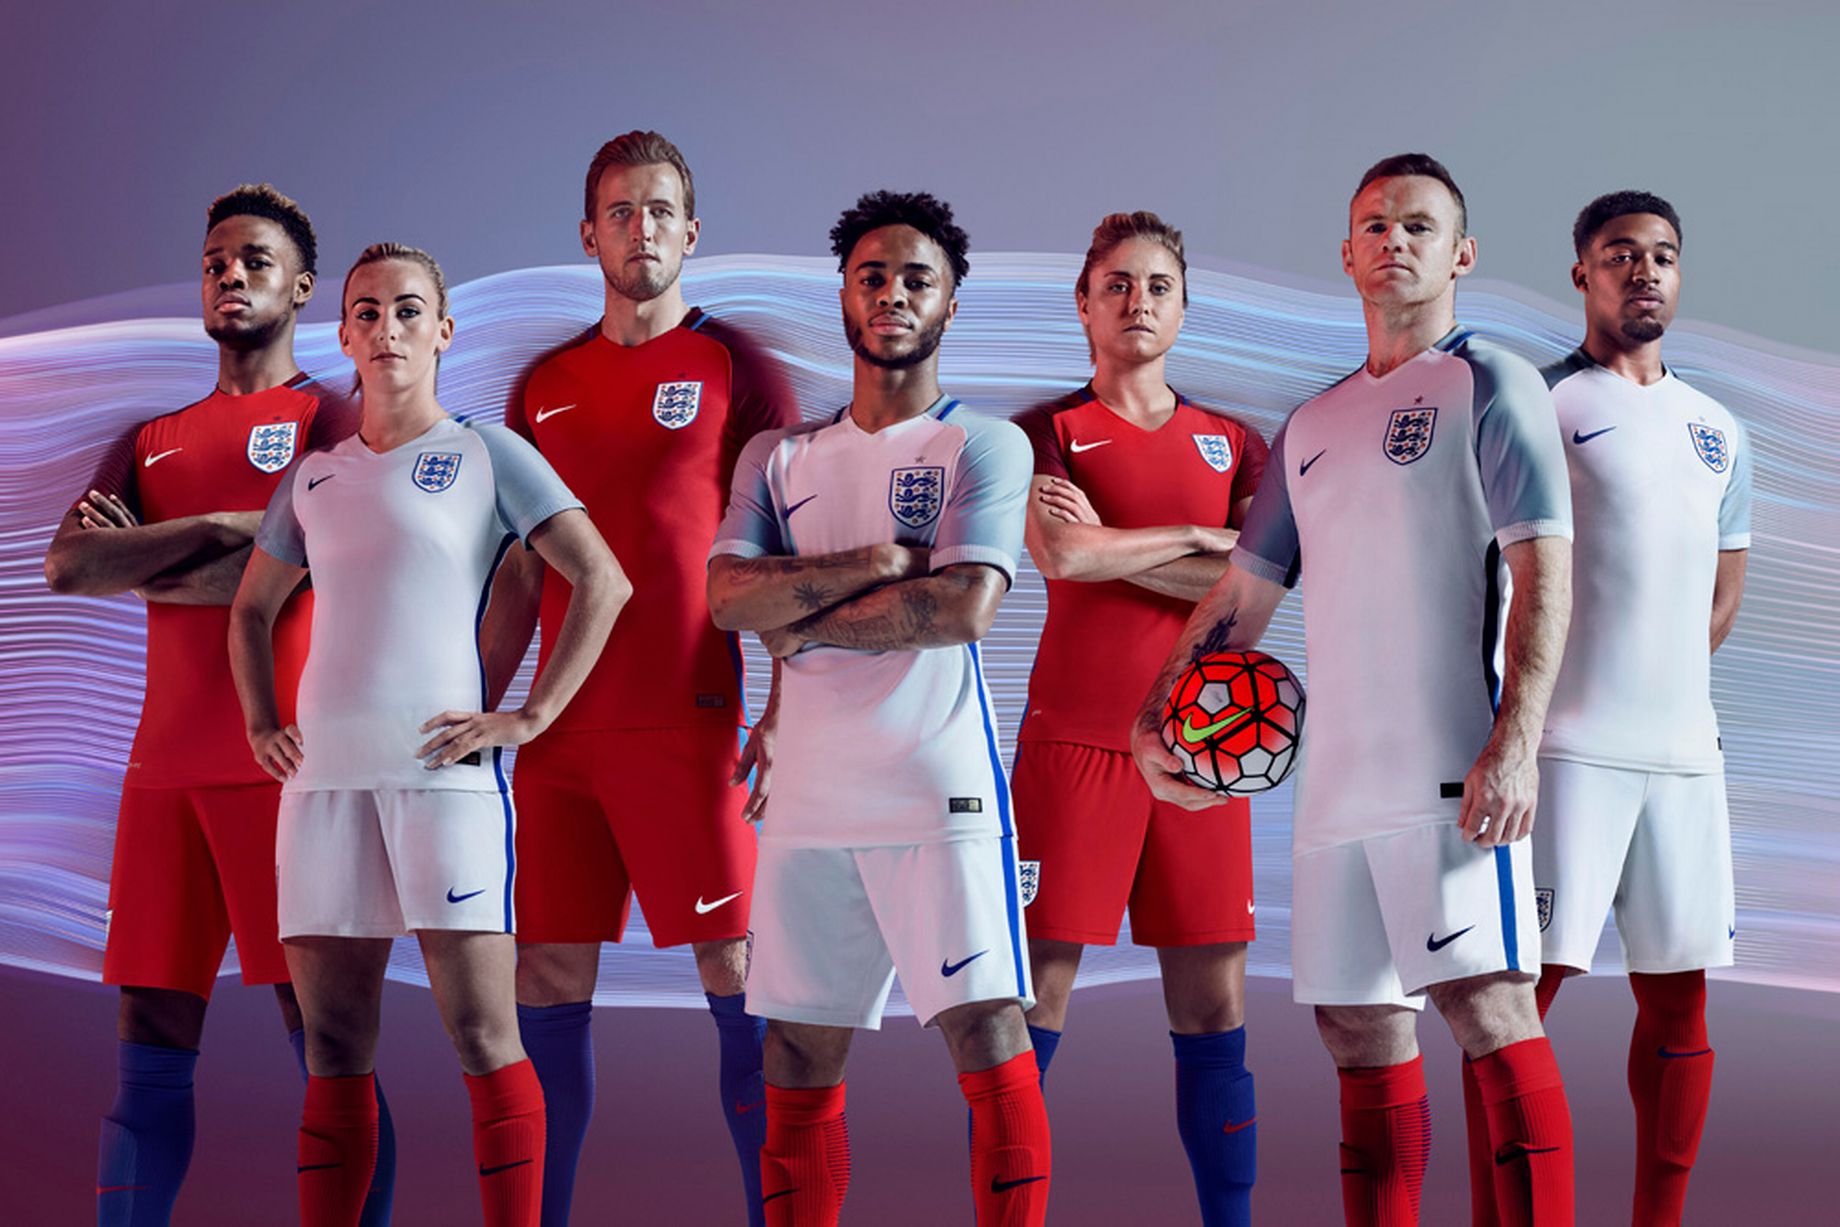 پیراهن اول و دوم انگلستان برای یورو 2016 معرفی شد